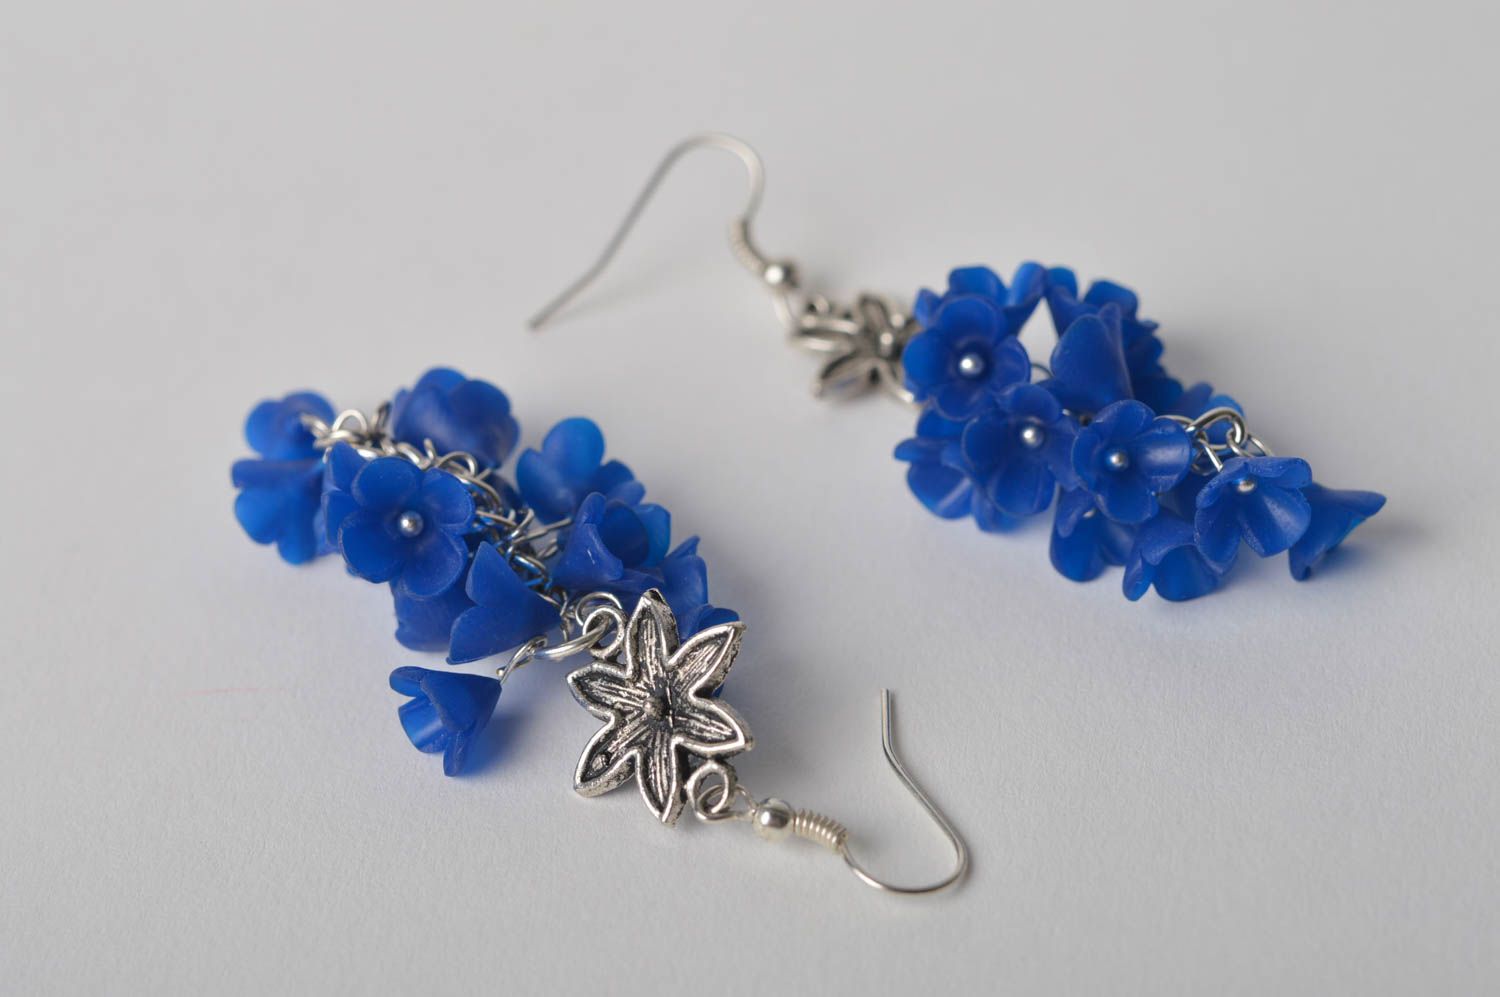 Cute handmade plastic earrings flower earrings beautiful jewellery gift ideas photo 3